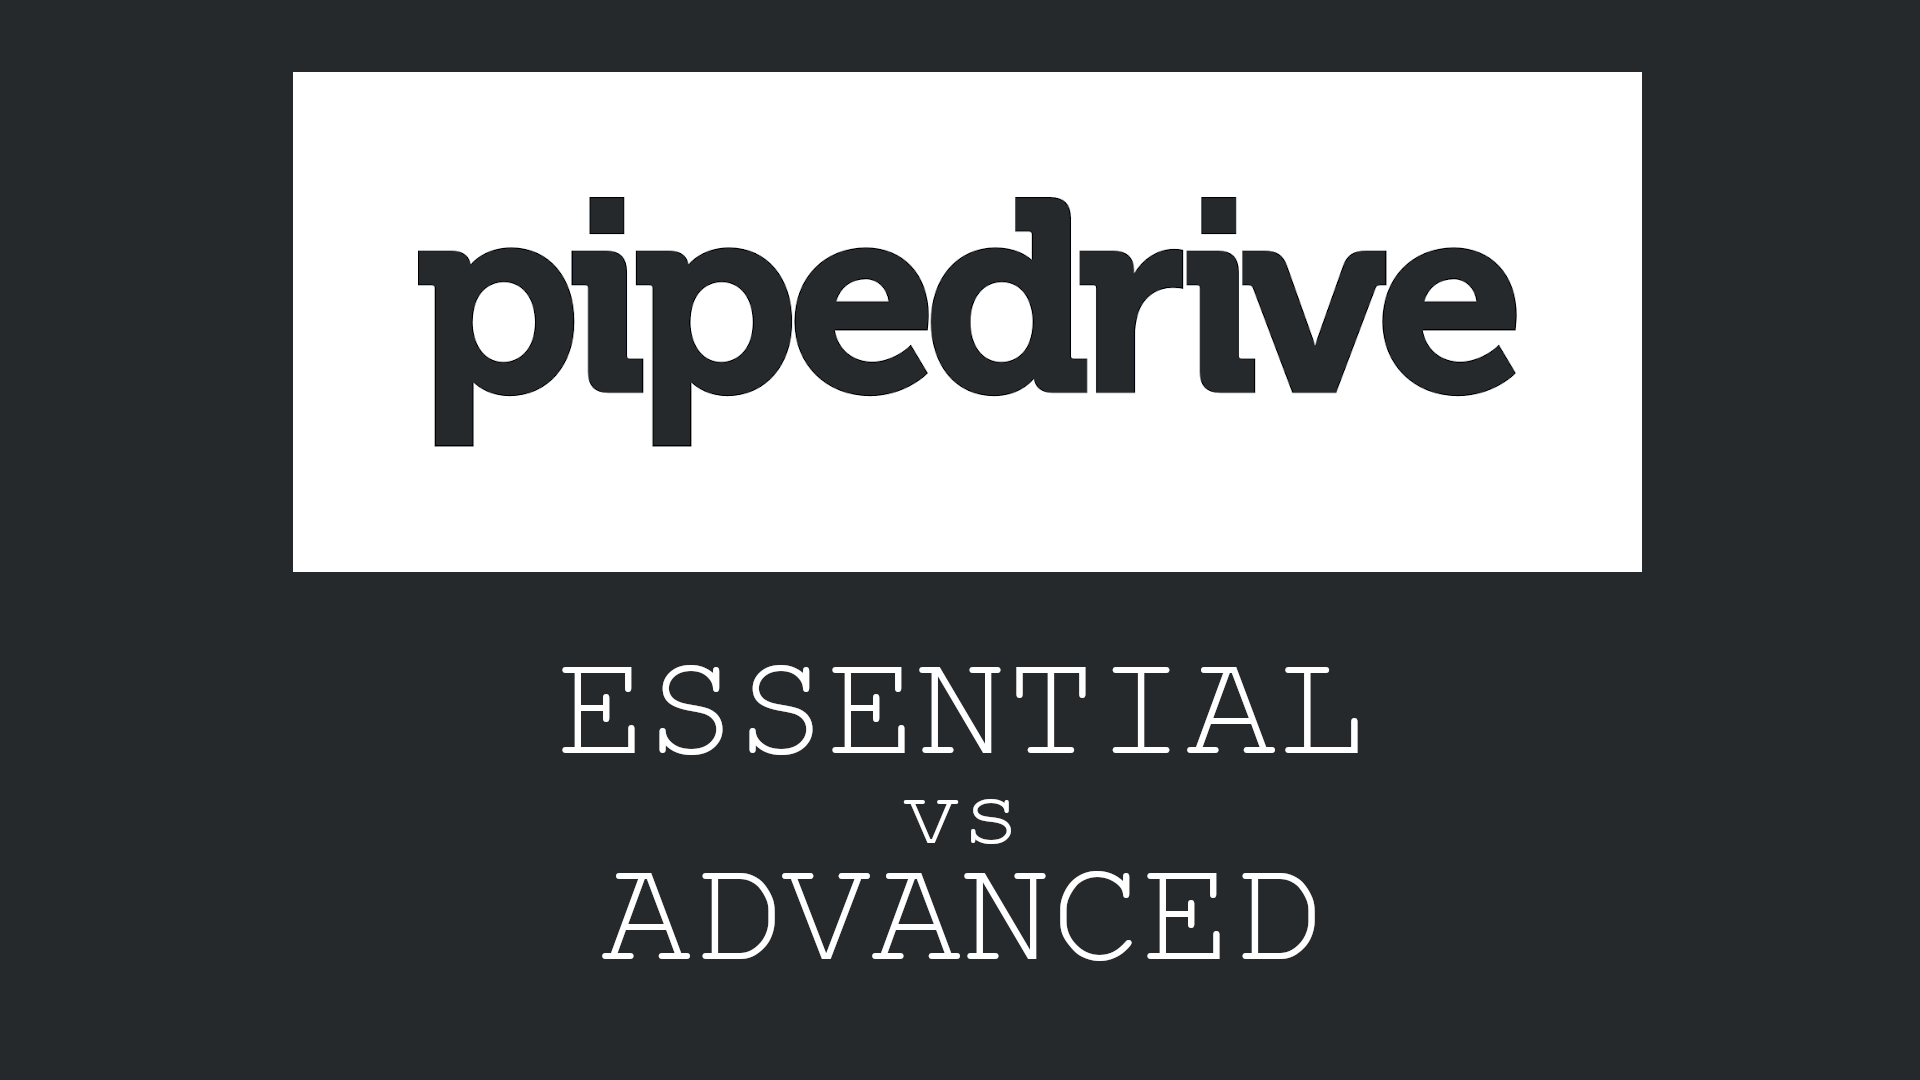 CRM-toimittaja Pipedrive uudisti hinnoittelumallinsa kesällä 2019. Tässä kirjoituksessa tarkastellaan, missä tapauksessa yrityksen tai tiimin kannattaa valita Pipedrive Essential tai Advanced käyttöönsä.